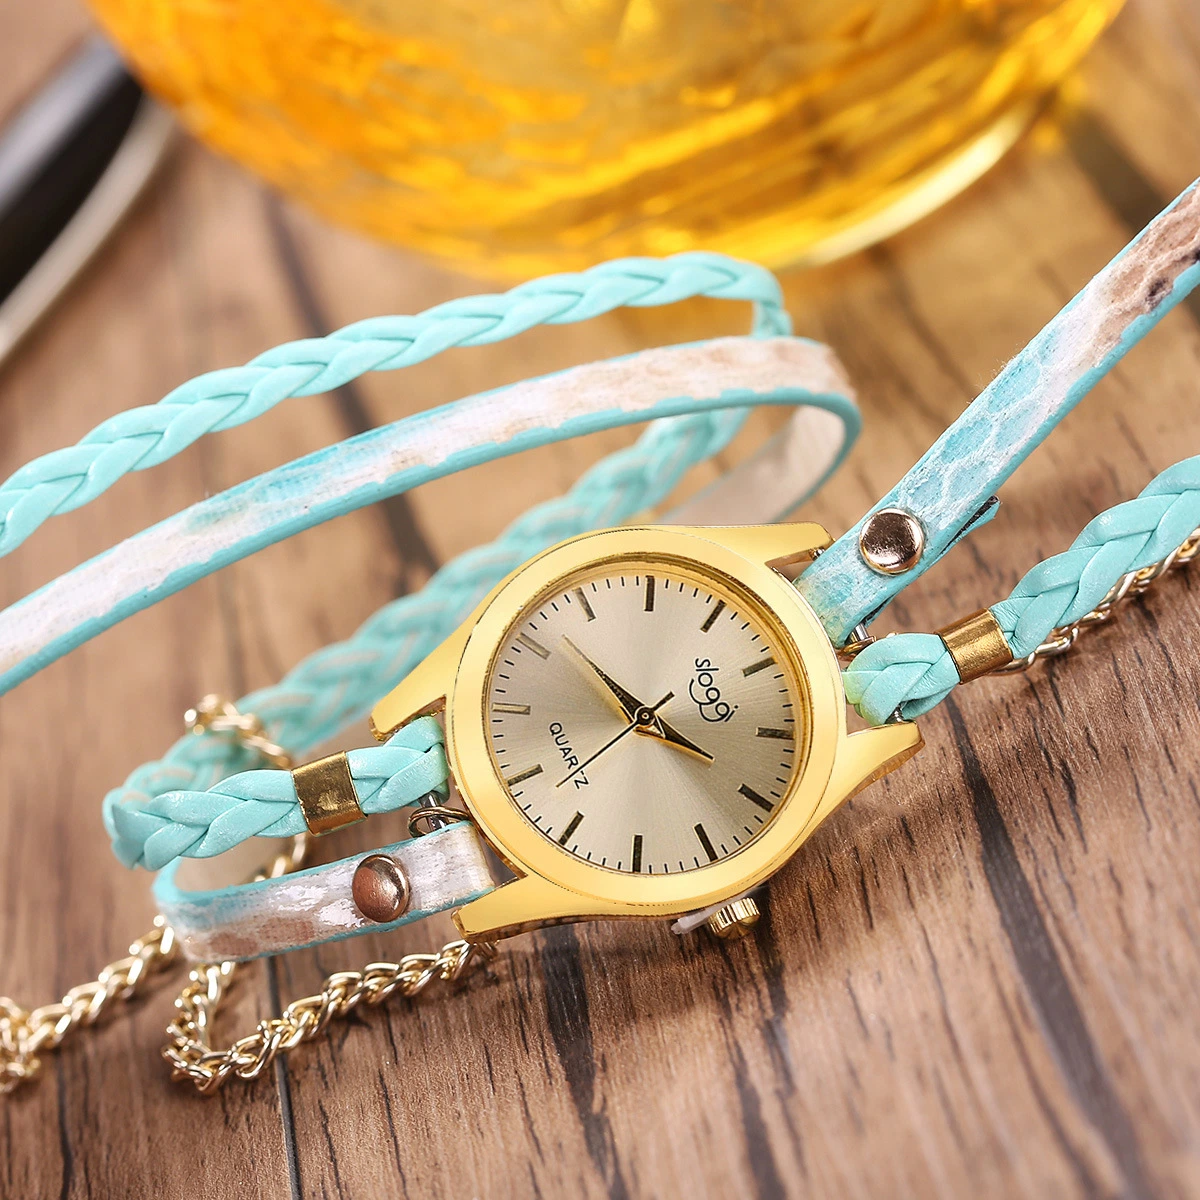 La mujer de piel sintética de serpentina multicapa ajustar el reloj de cuarzo reloj de pulsera Relojes de Mujer moda perfecta Idea de regalo Esg13630